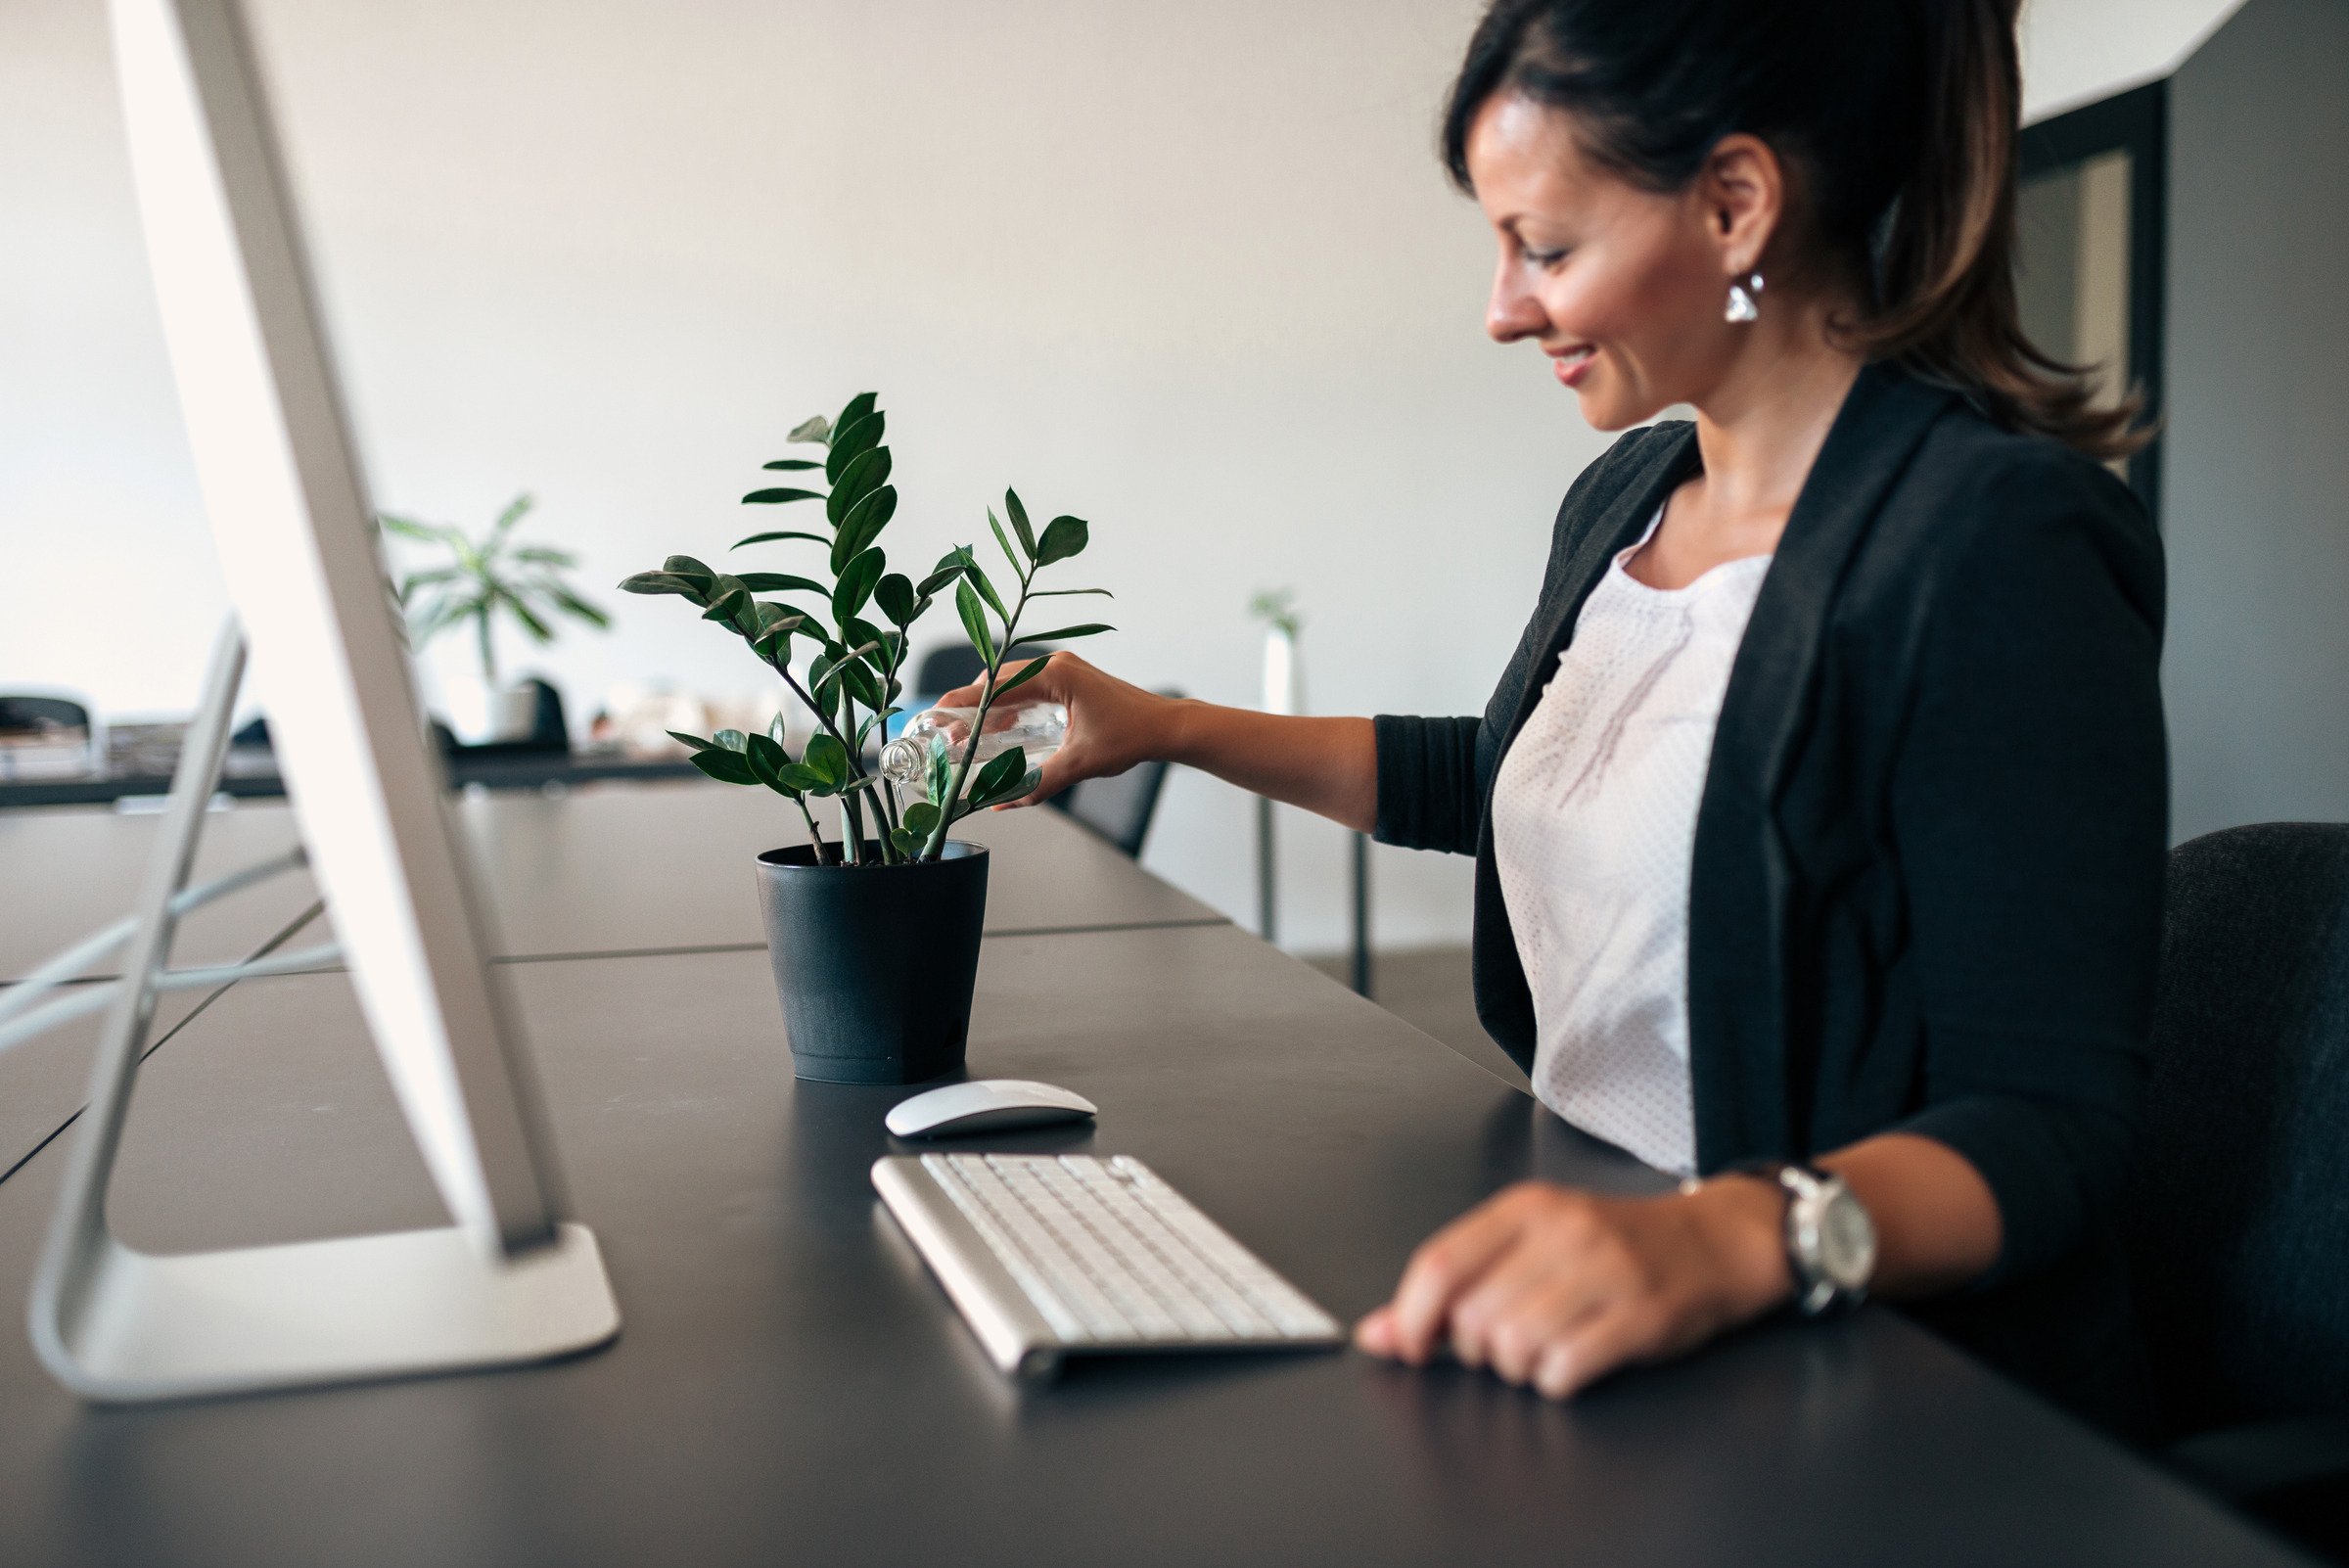 végétaliser son bureau professionnel : femme qui arrose une plante en pot sur son bureau